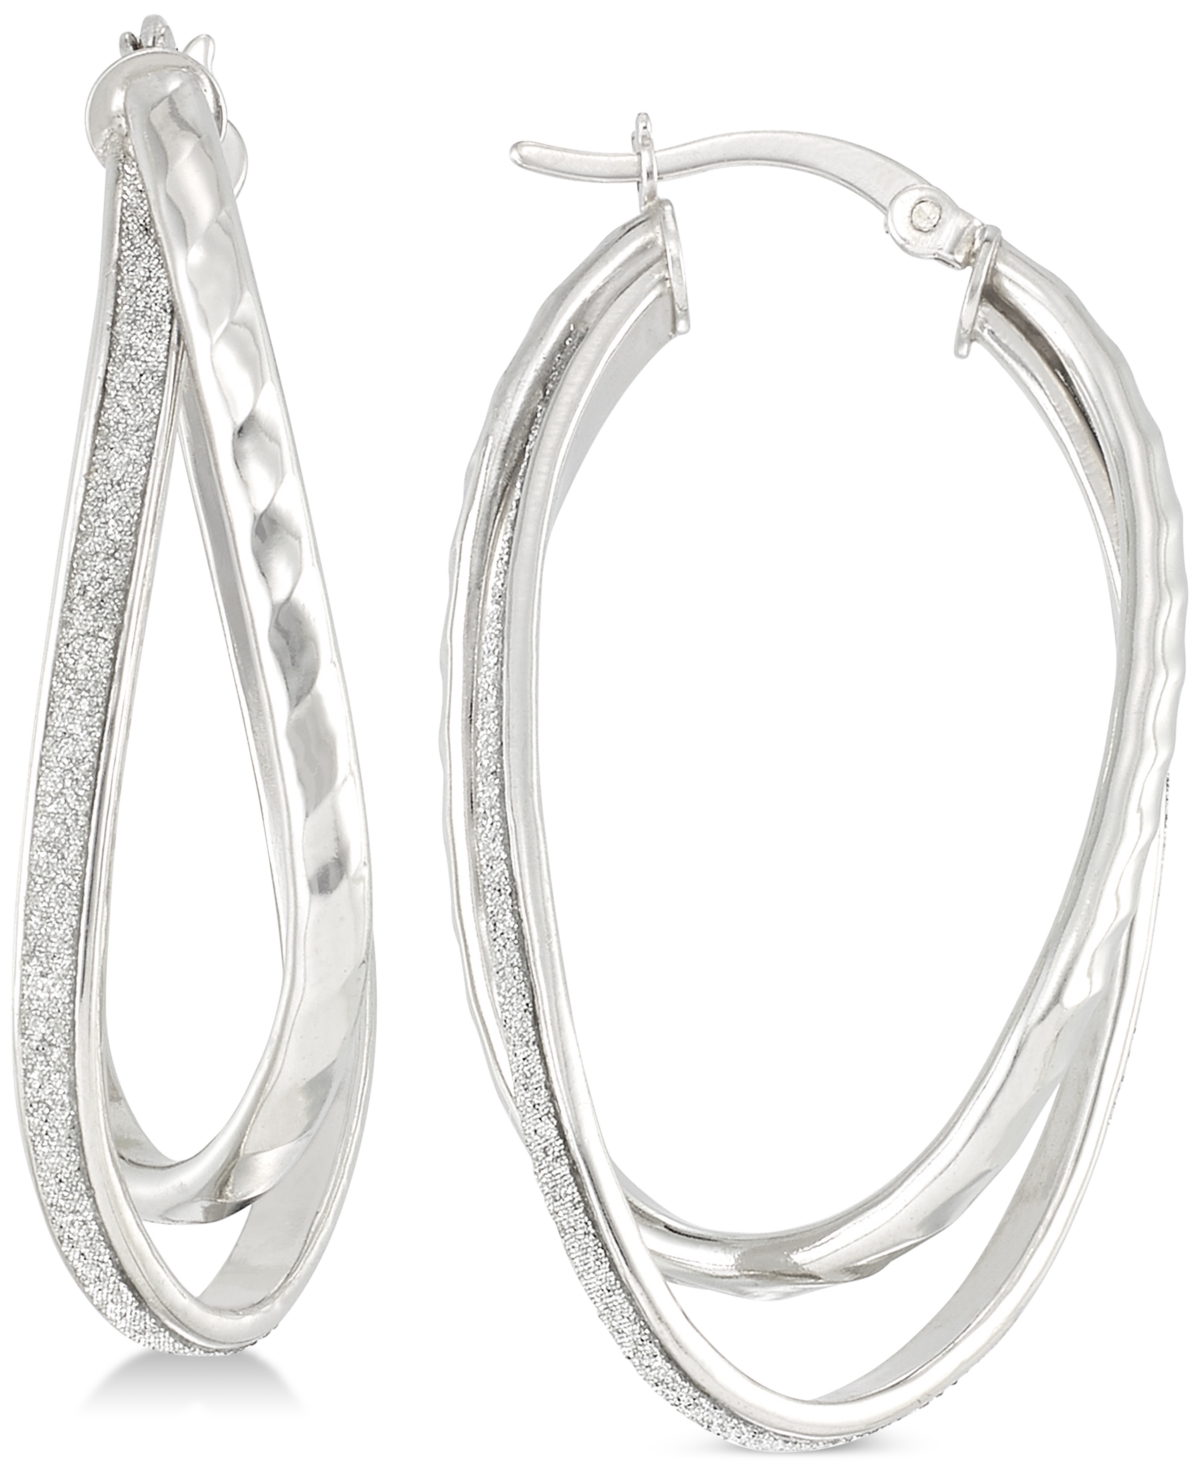 Glitter Twist Double Oval Hoop Earrings in Sterling Silver - Silver